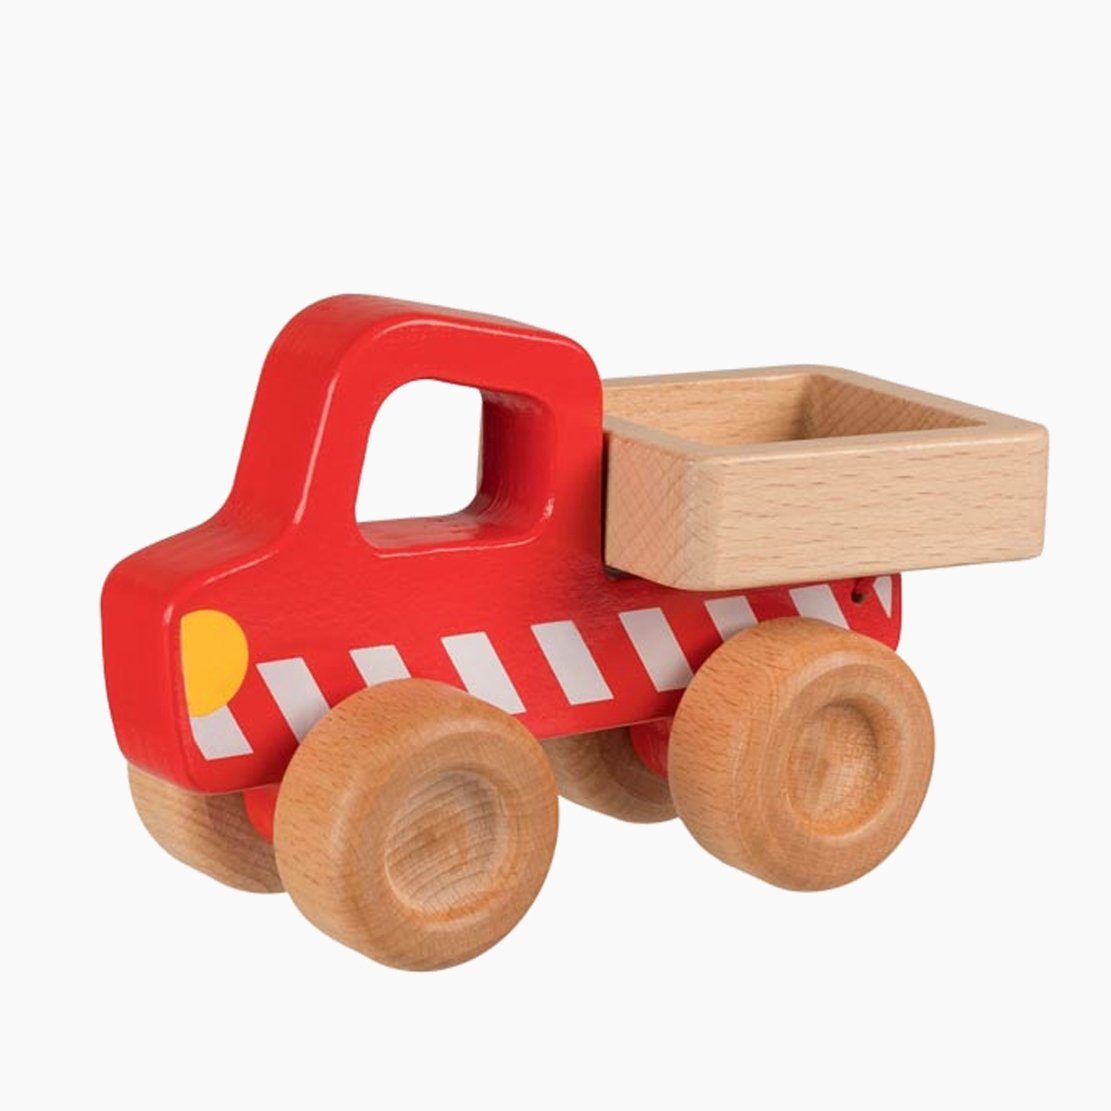 goki Spielzeug-Baumaschine Kipper, Massiv Holz